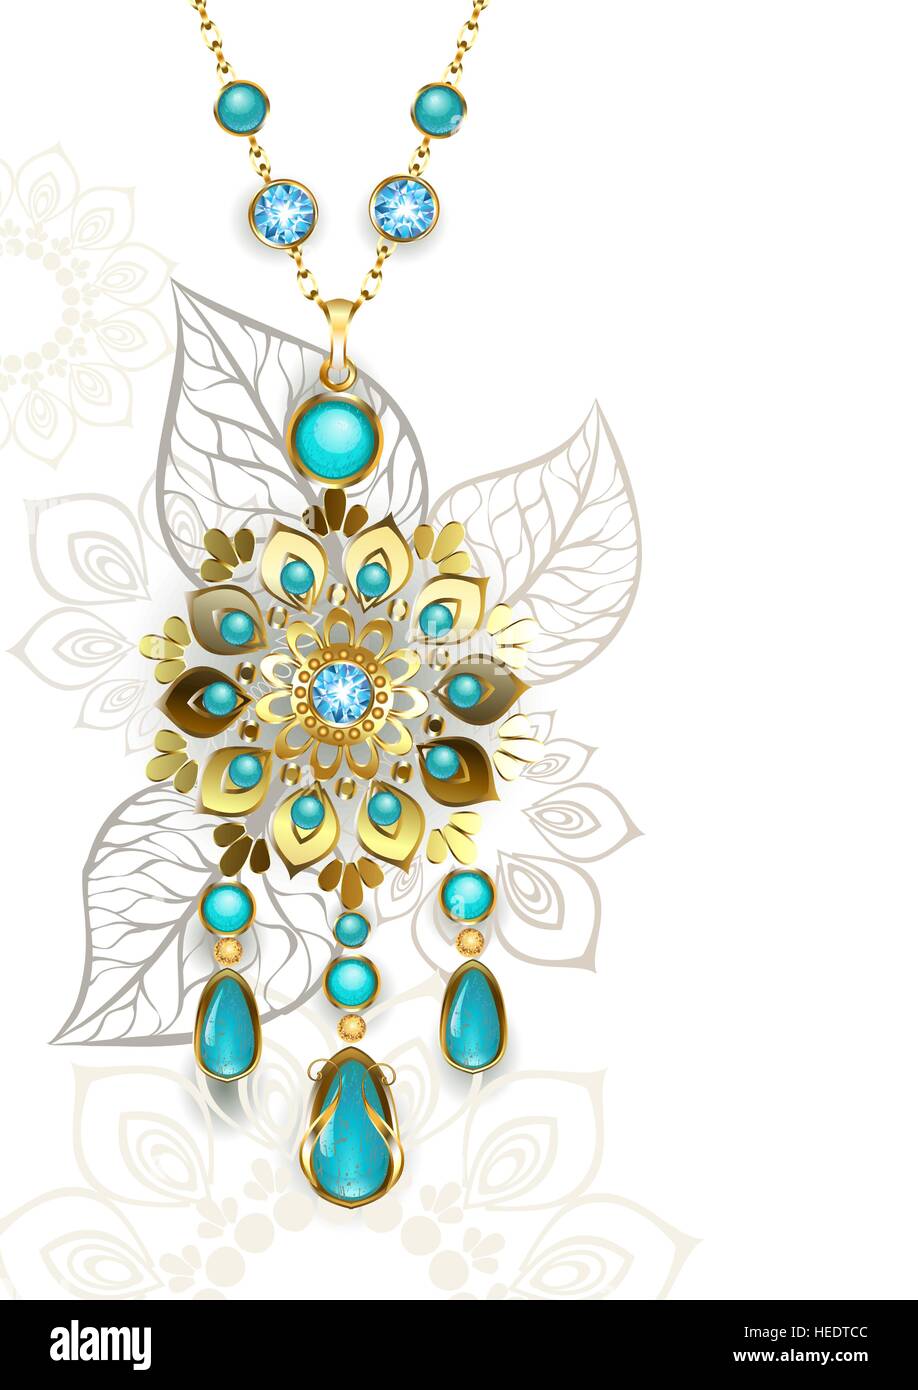 Medaglione oro decorate in stile orientale su un turchese chiaro sfondo a motivi geometrici. Gioielli di Design. Illustrazione Vettoriale